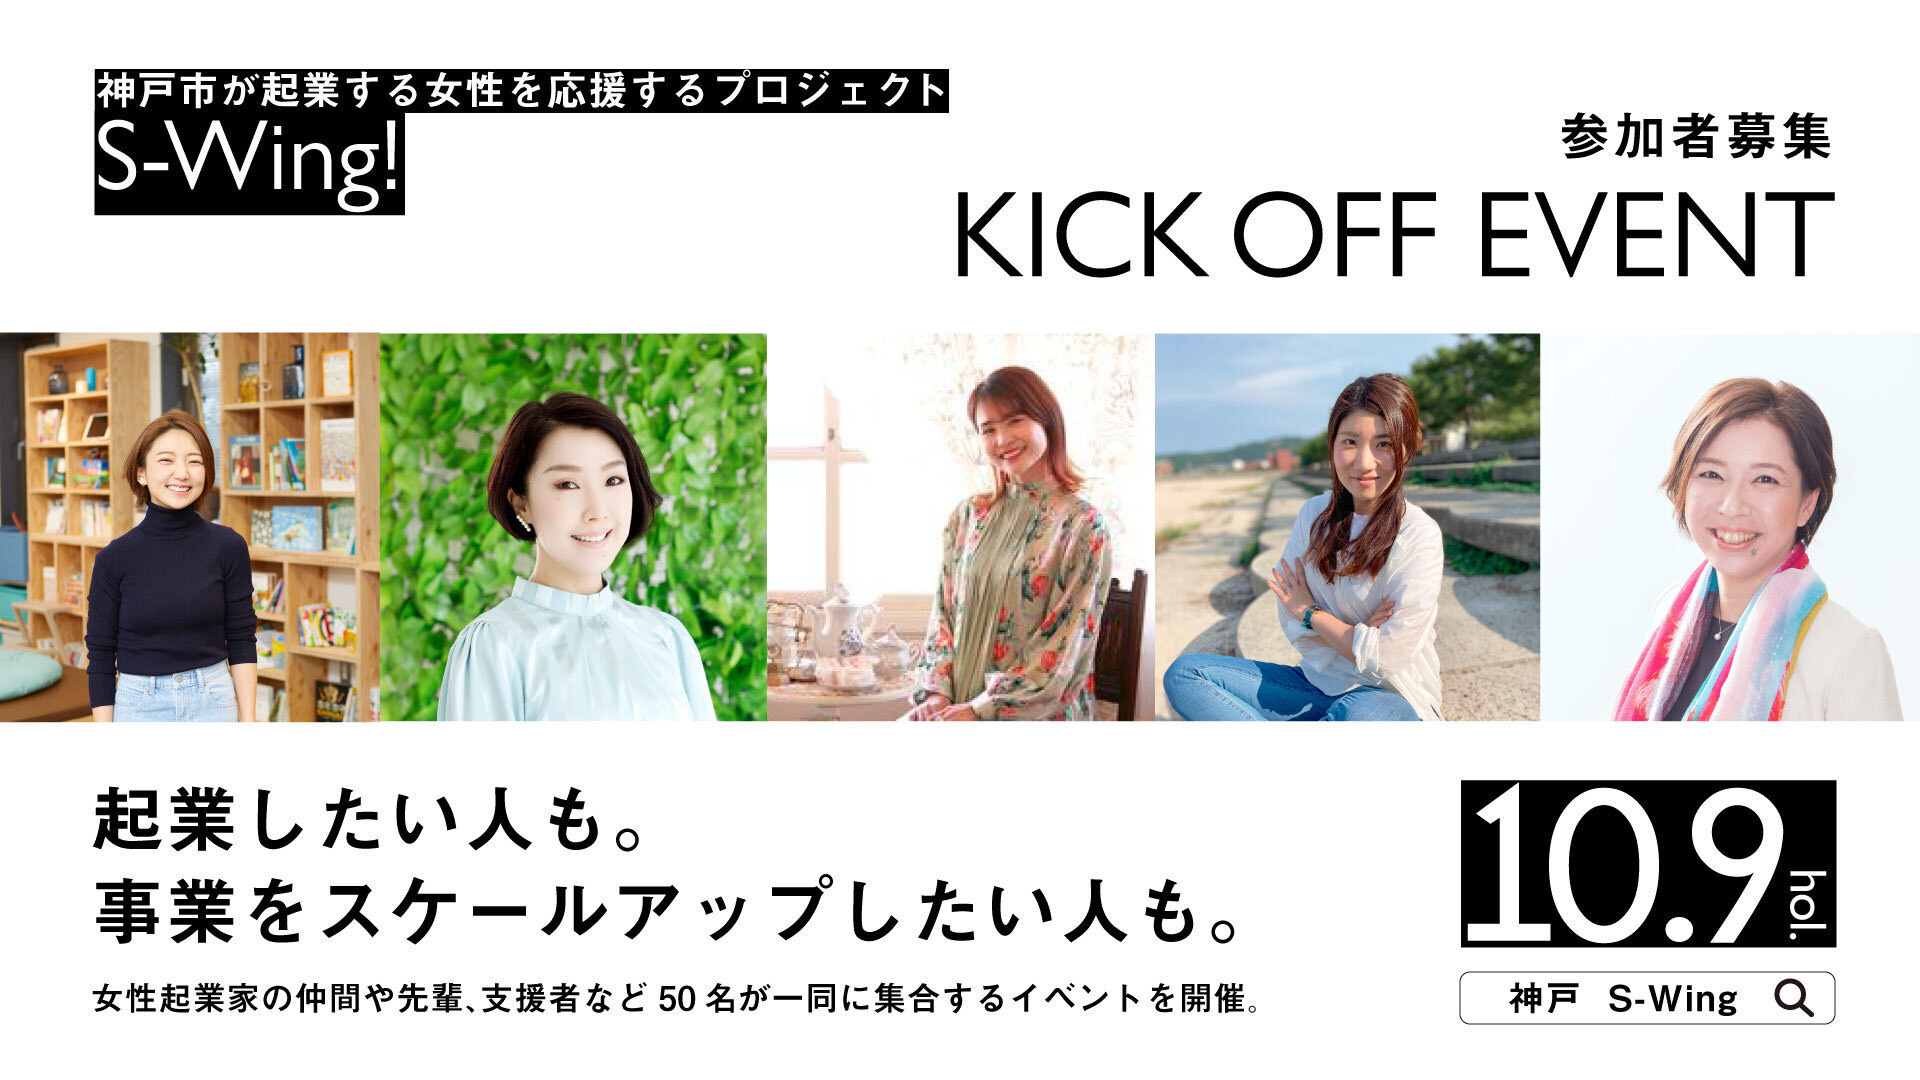 【神戸市】女性起業家を応援するプロジェクト「S-Wing!」キックオフイベント